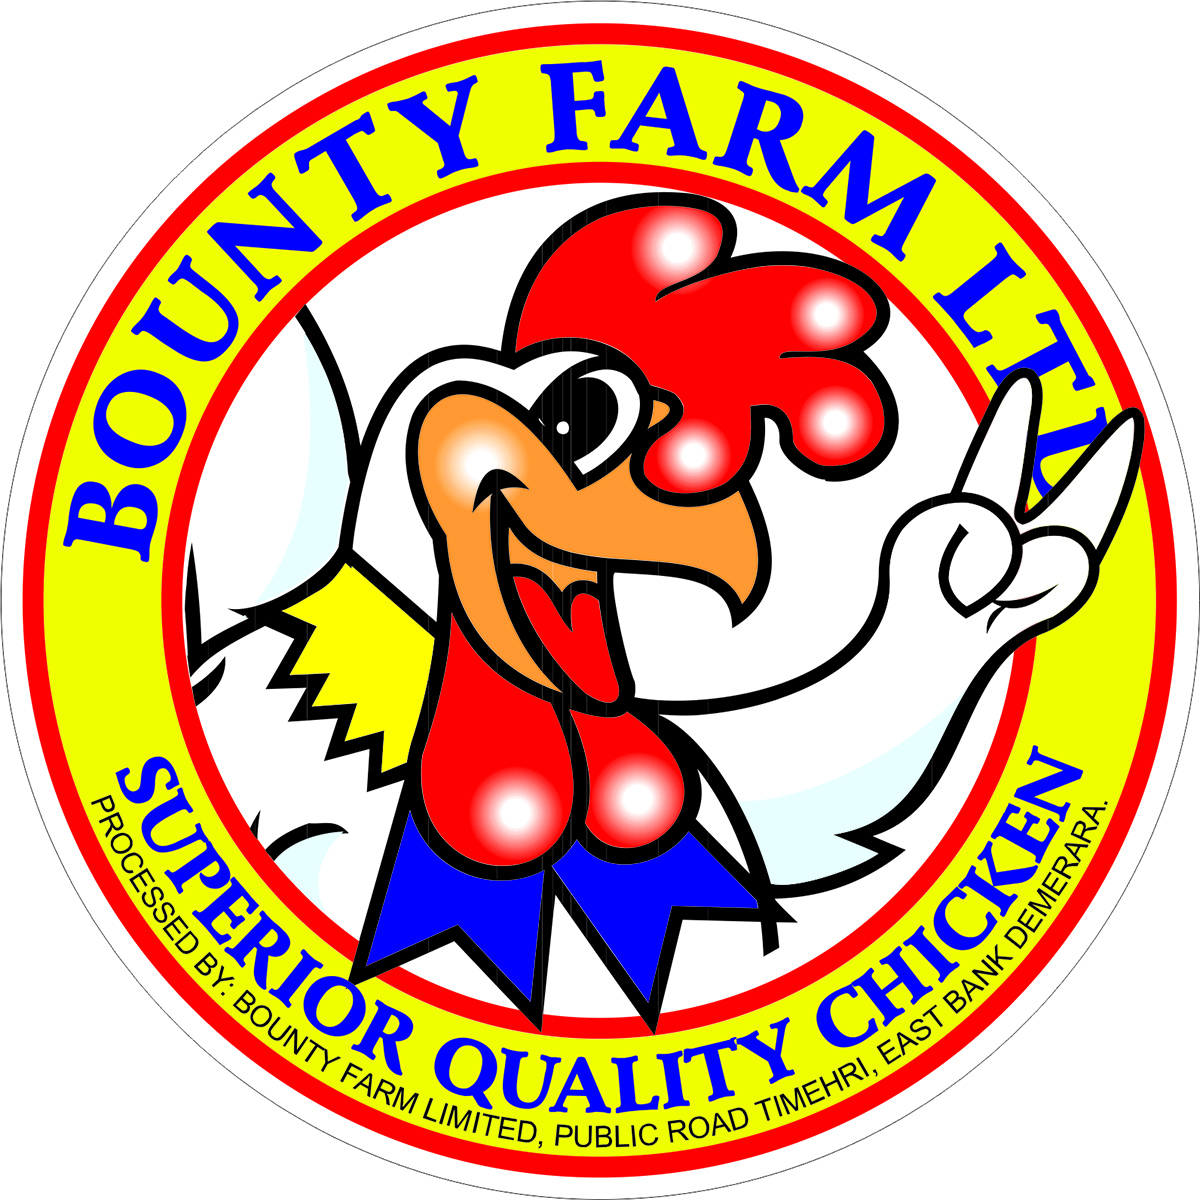 Bounty Farm Ltd